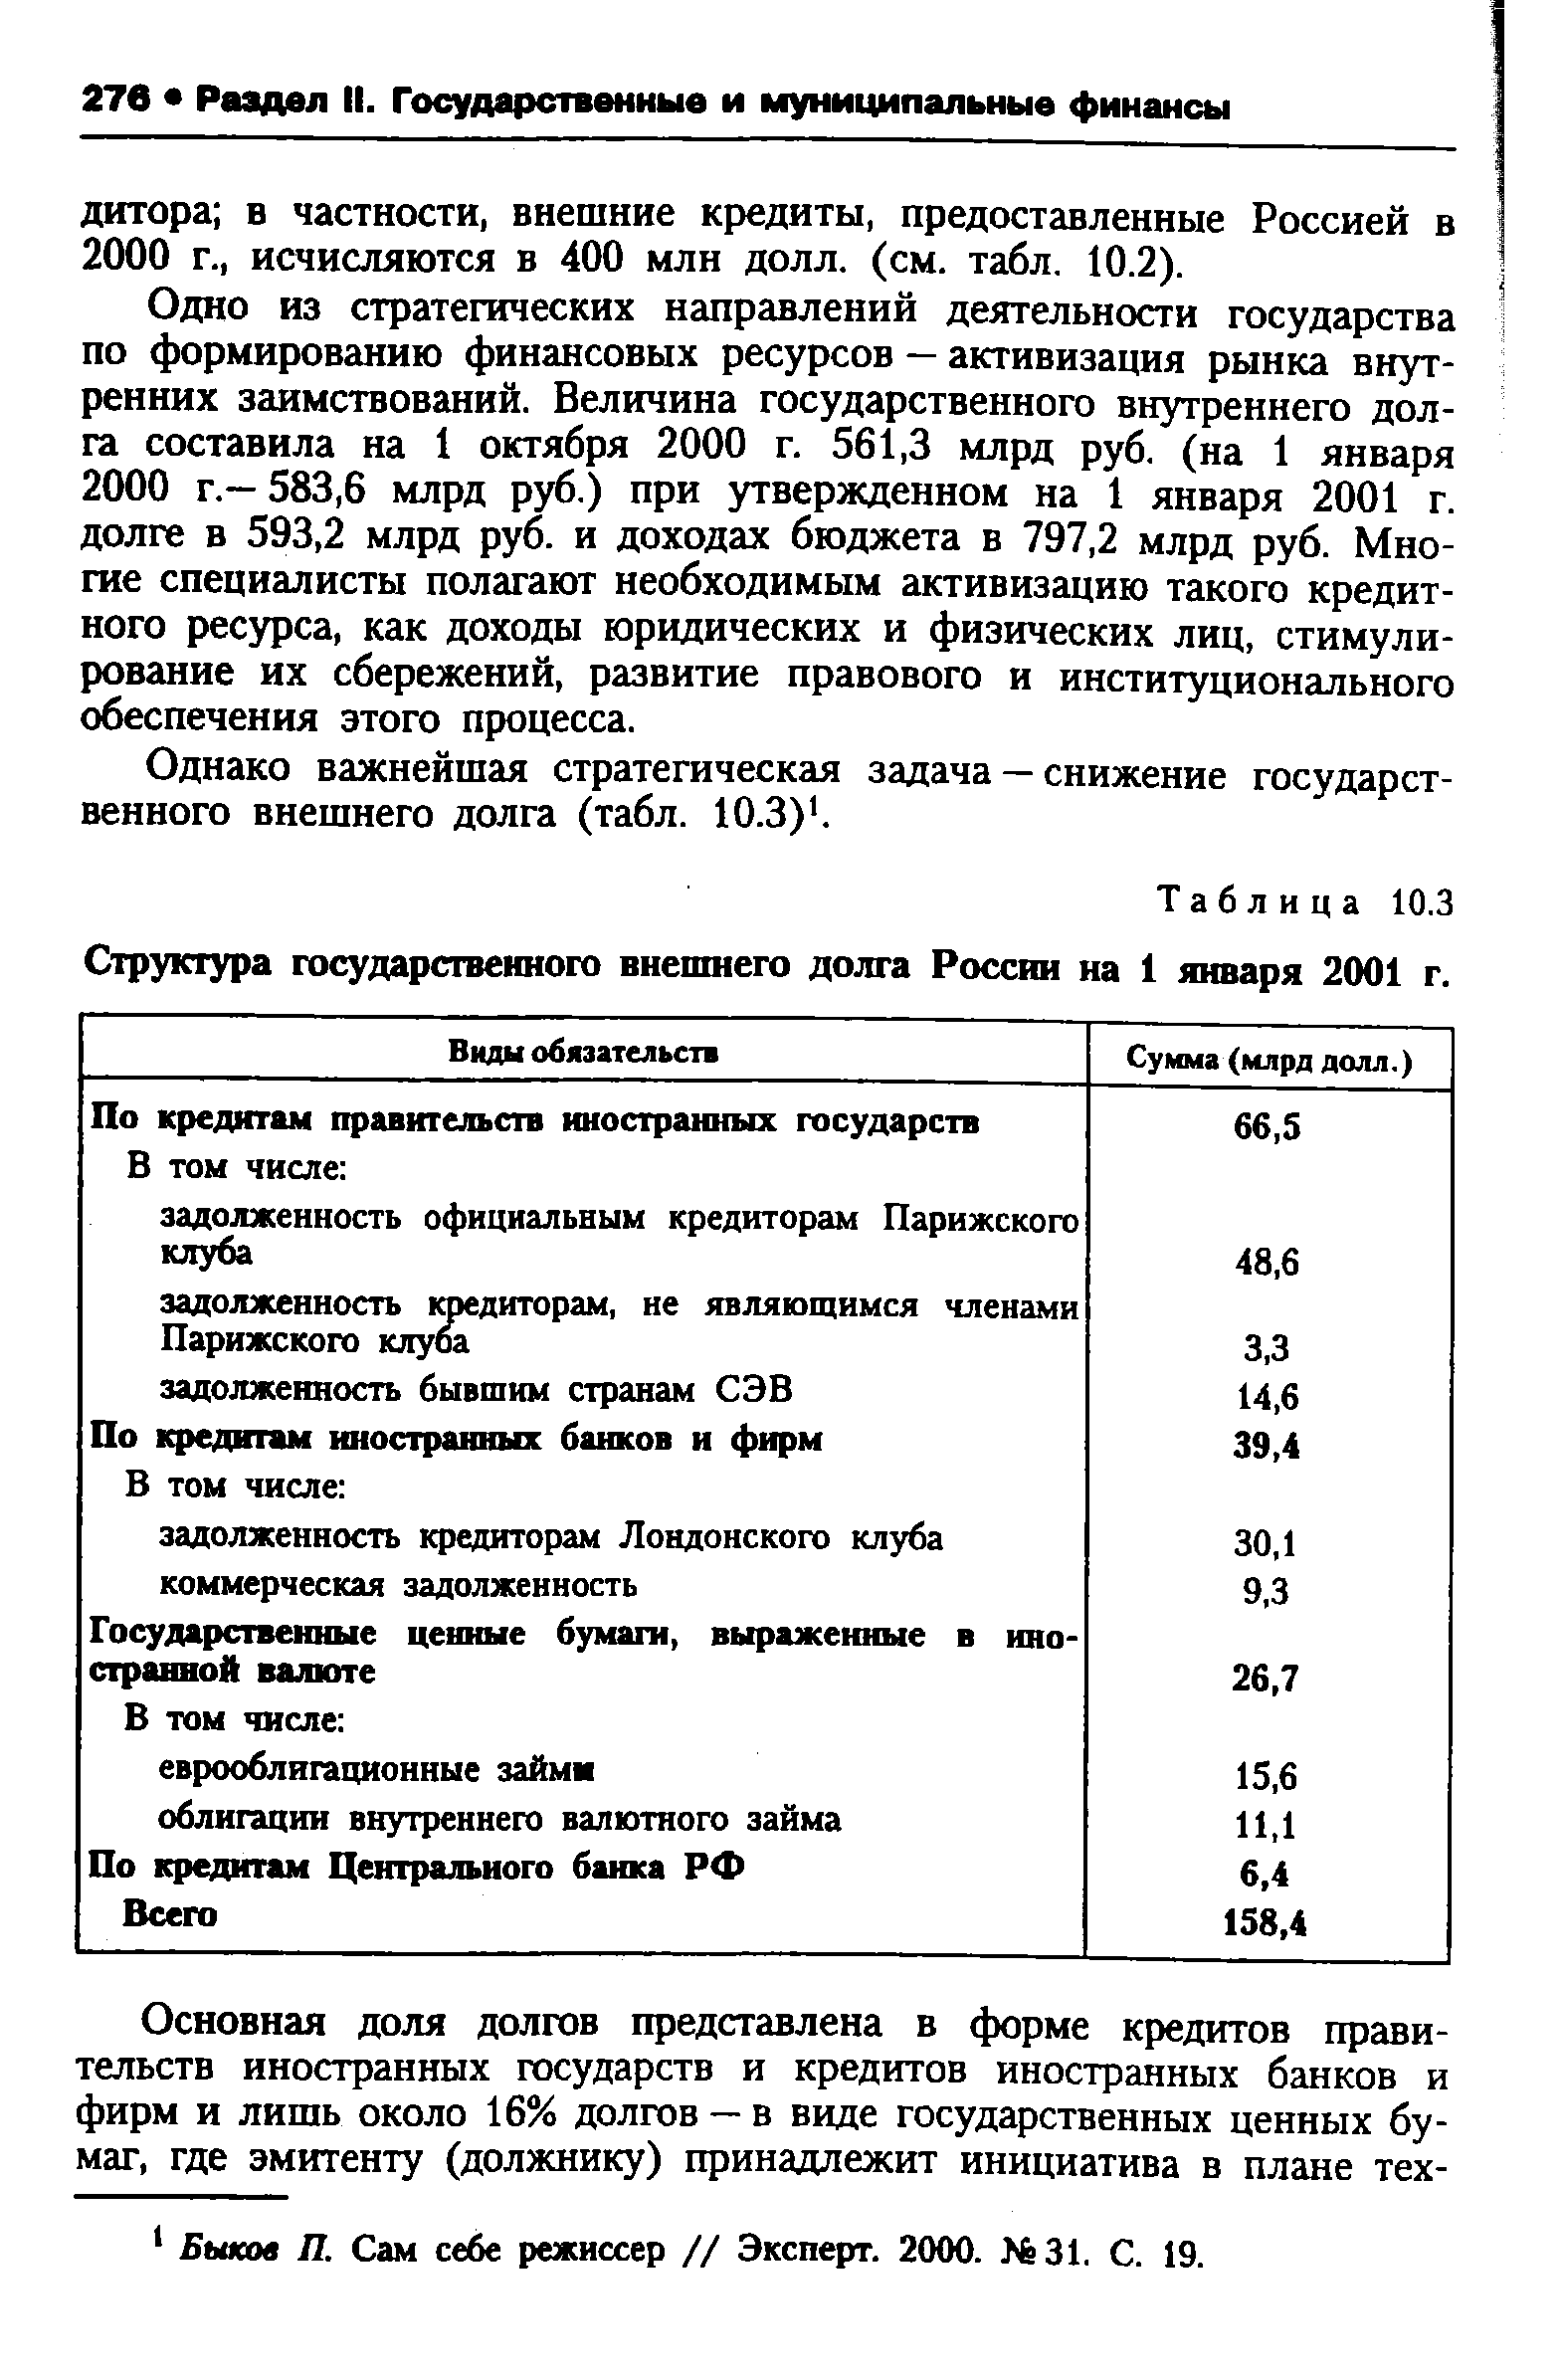 Таблица 10.3 Структура <a href="/info/69425">государственного внешнего долга</a> России на 1 января 2001 г.
